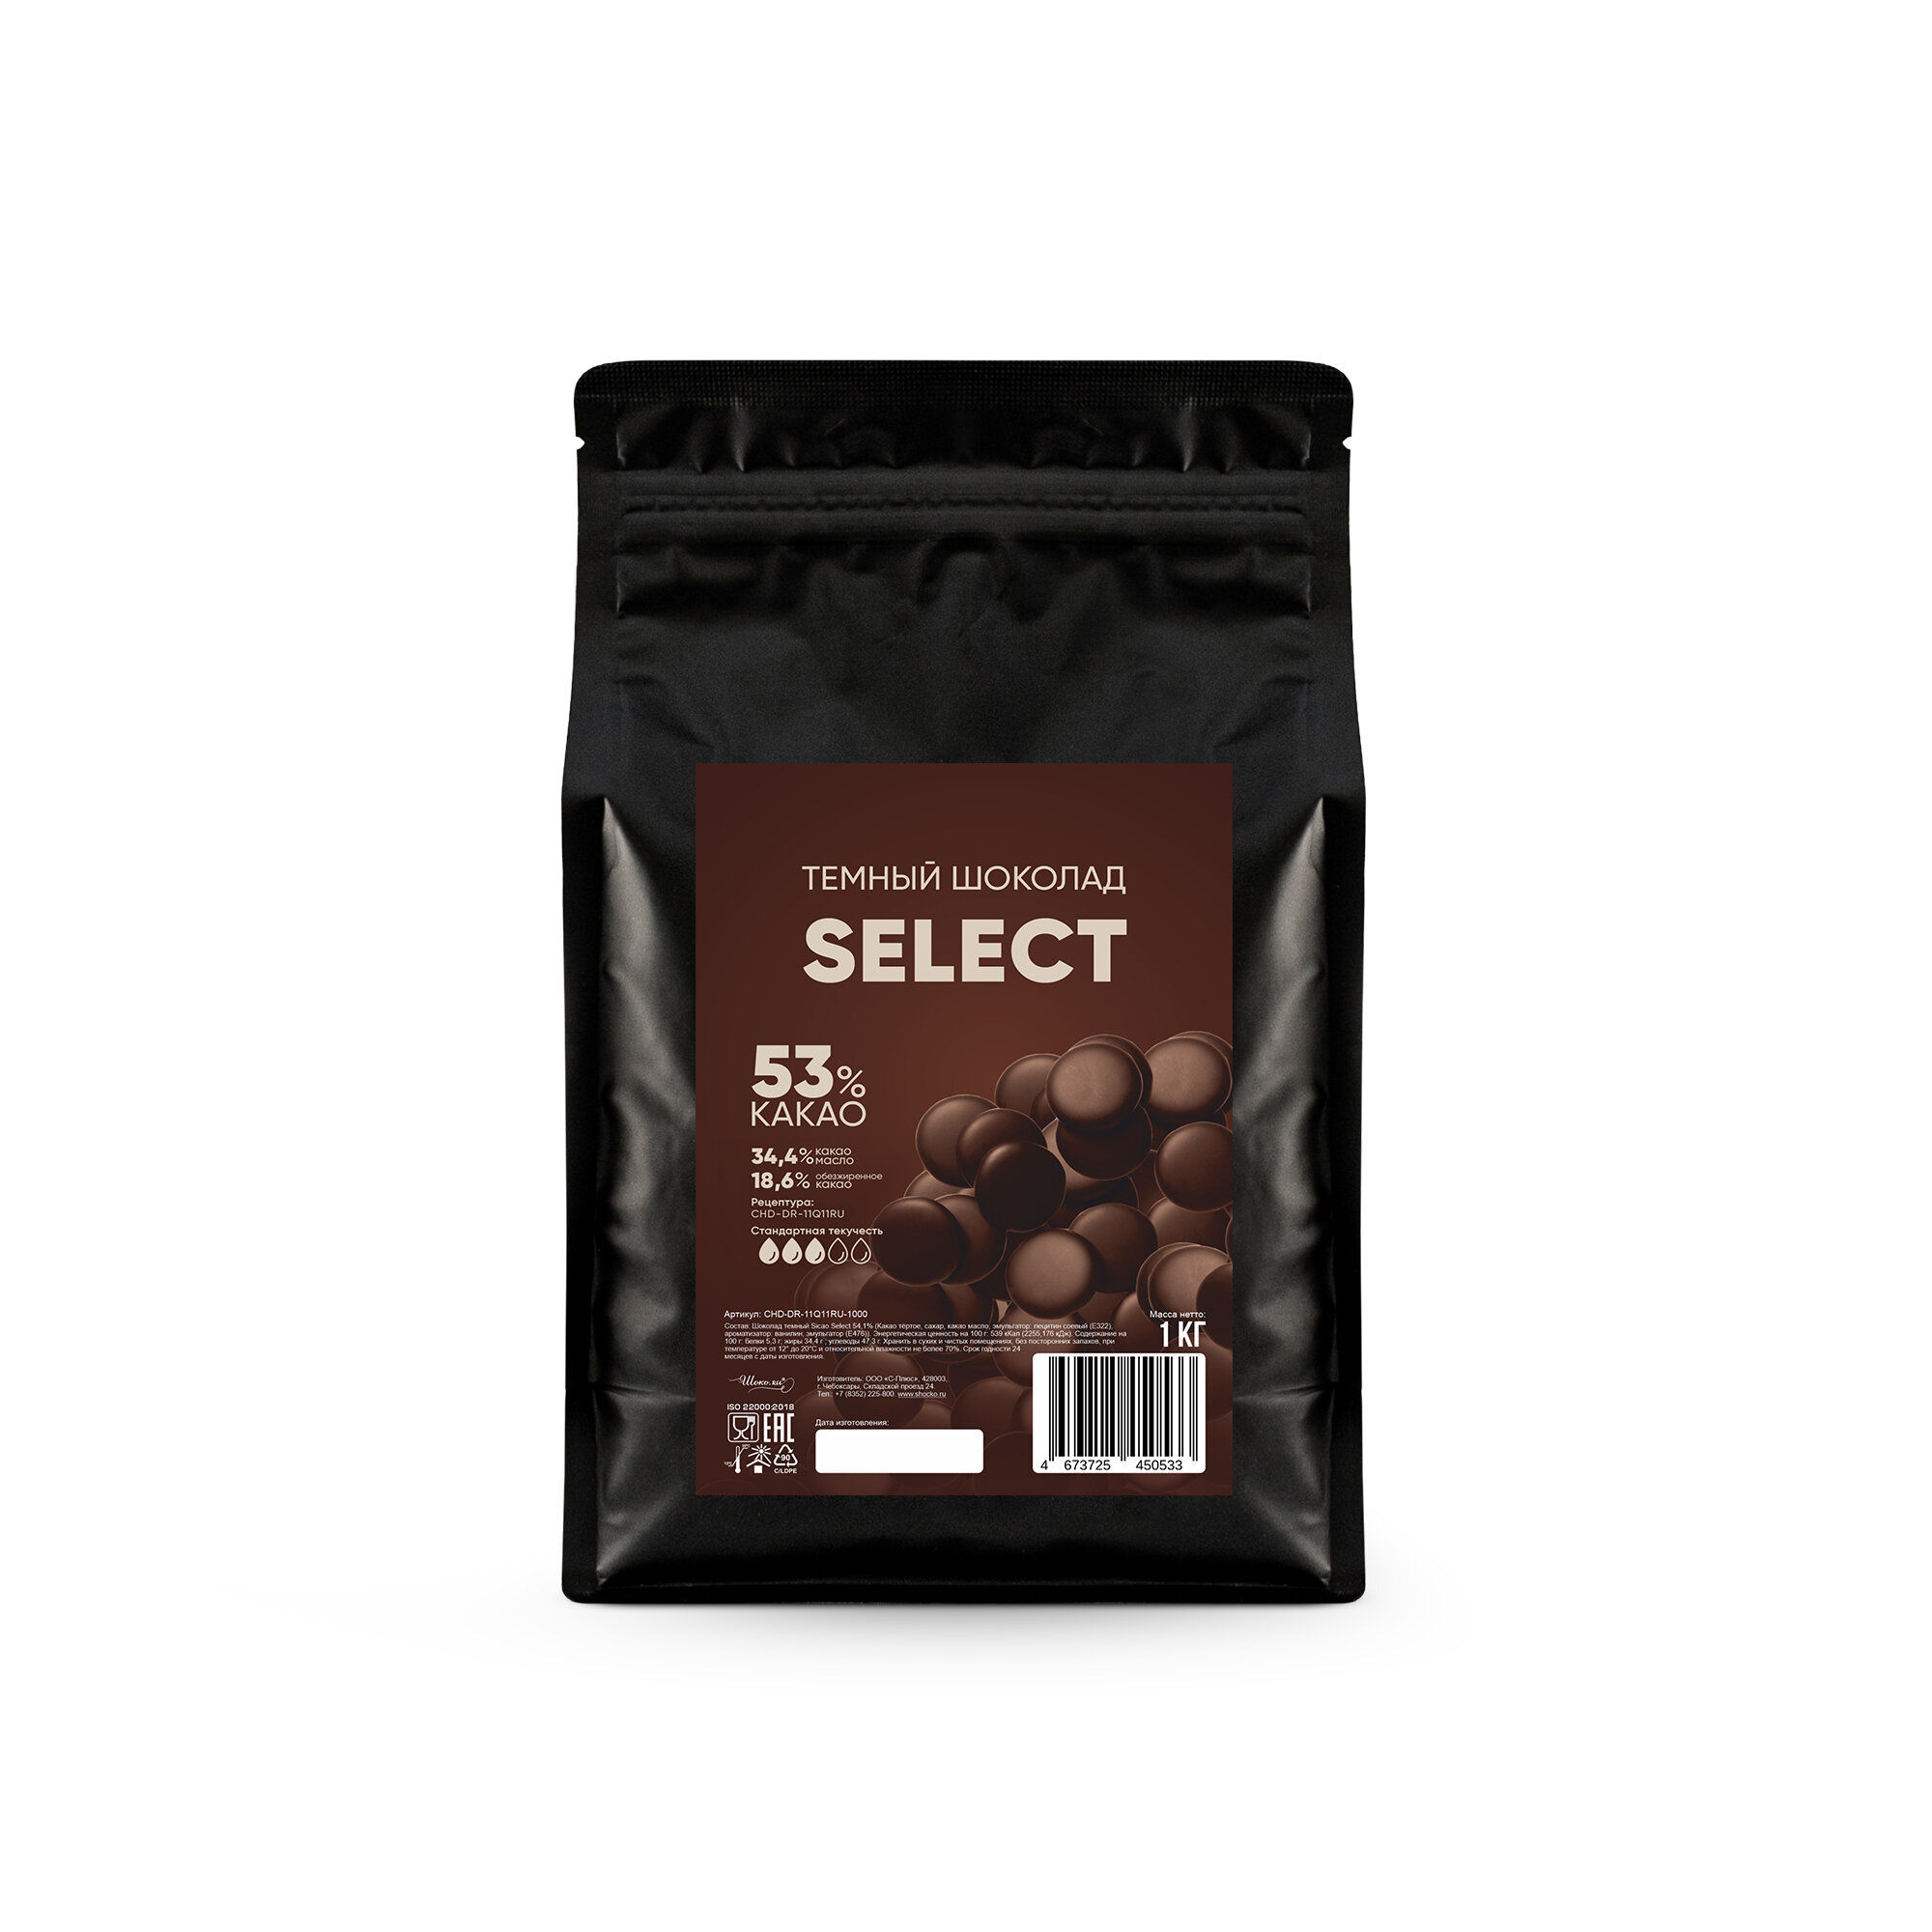 Шоколад темный кондитерский Select 54,1% Sicao (Сикао) 1 кг